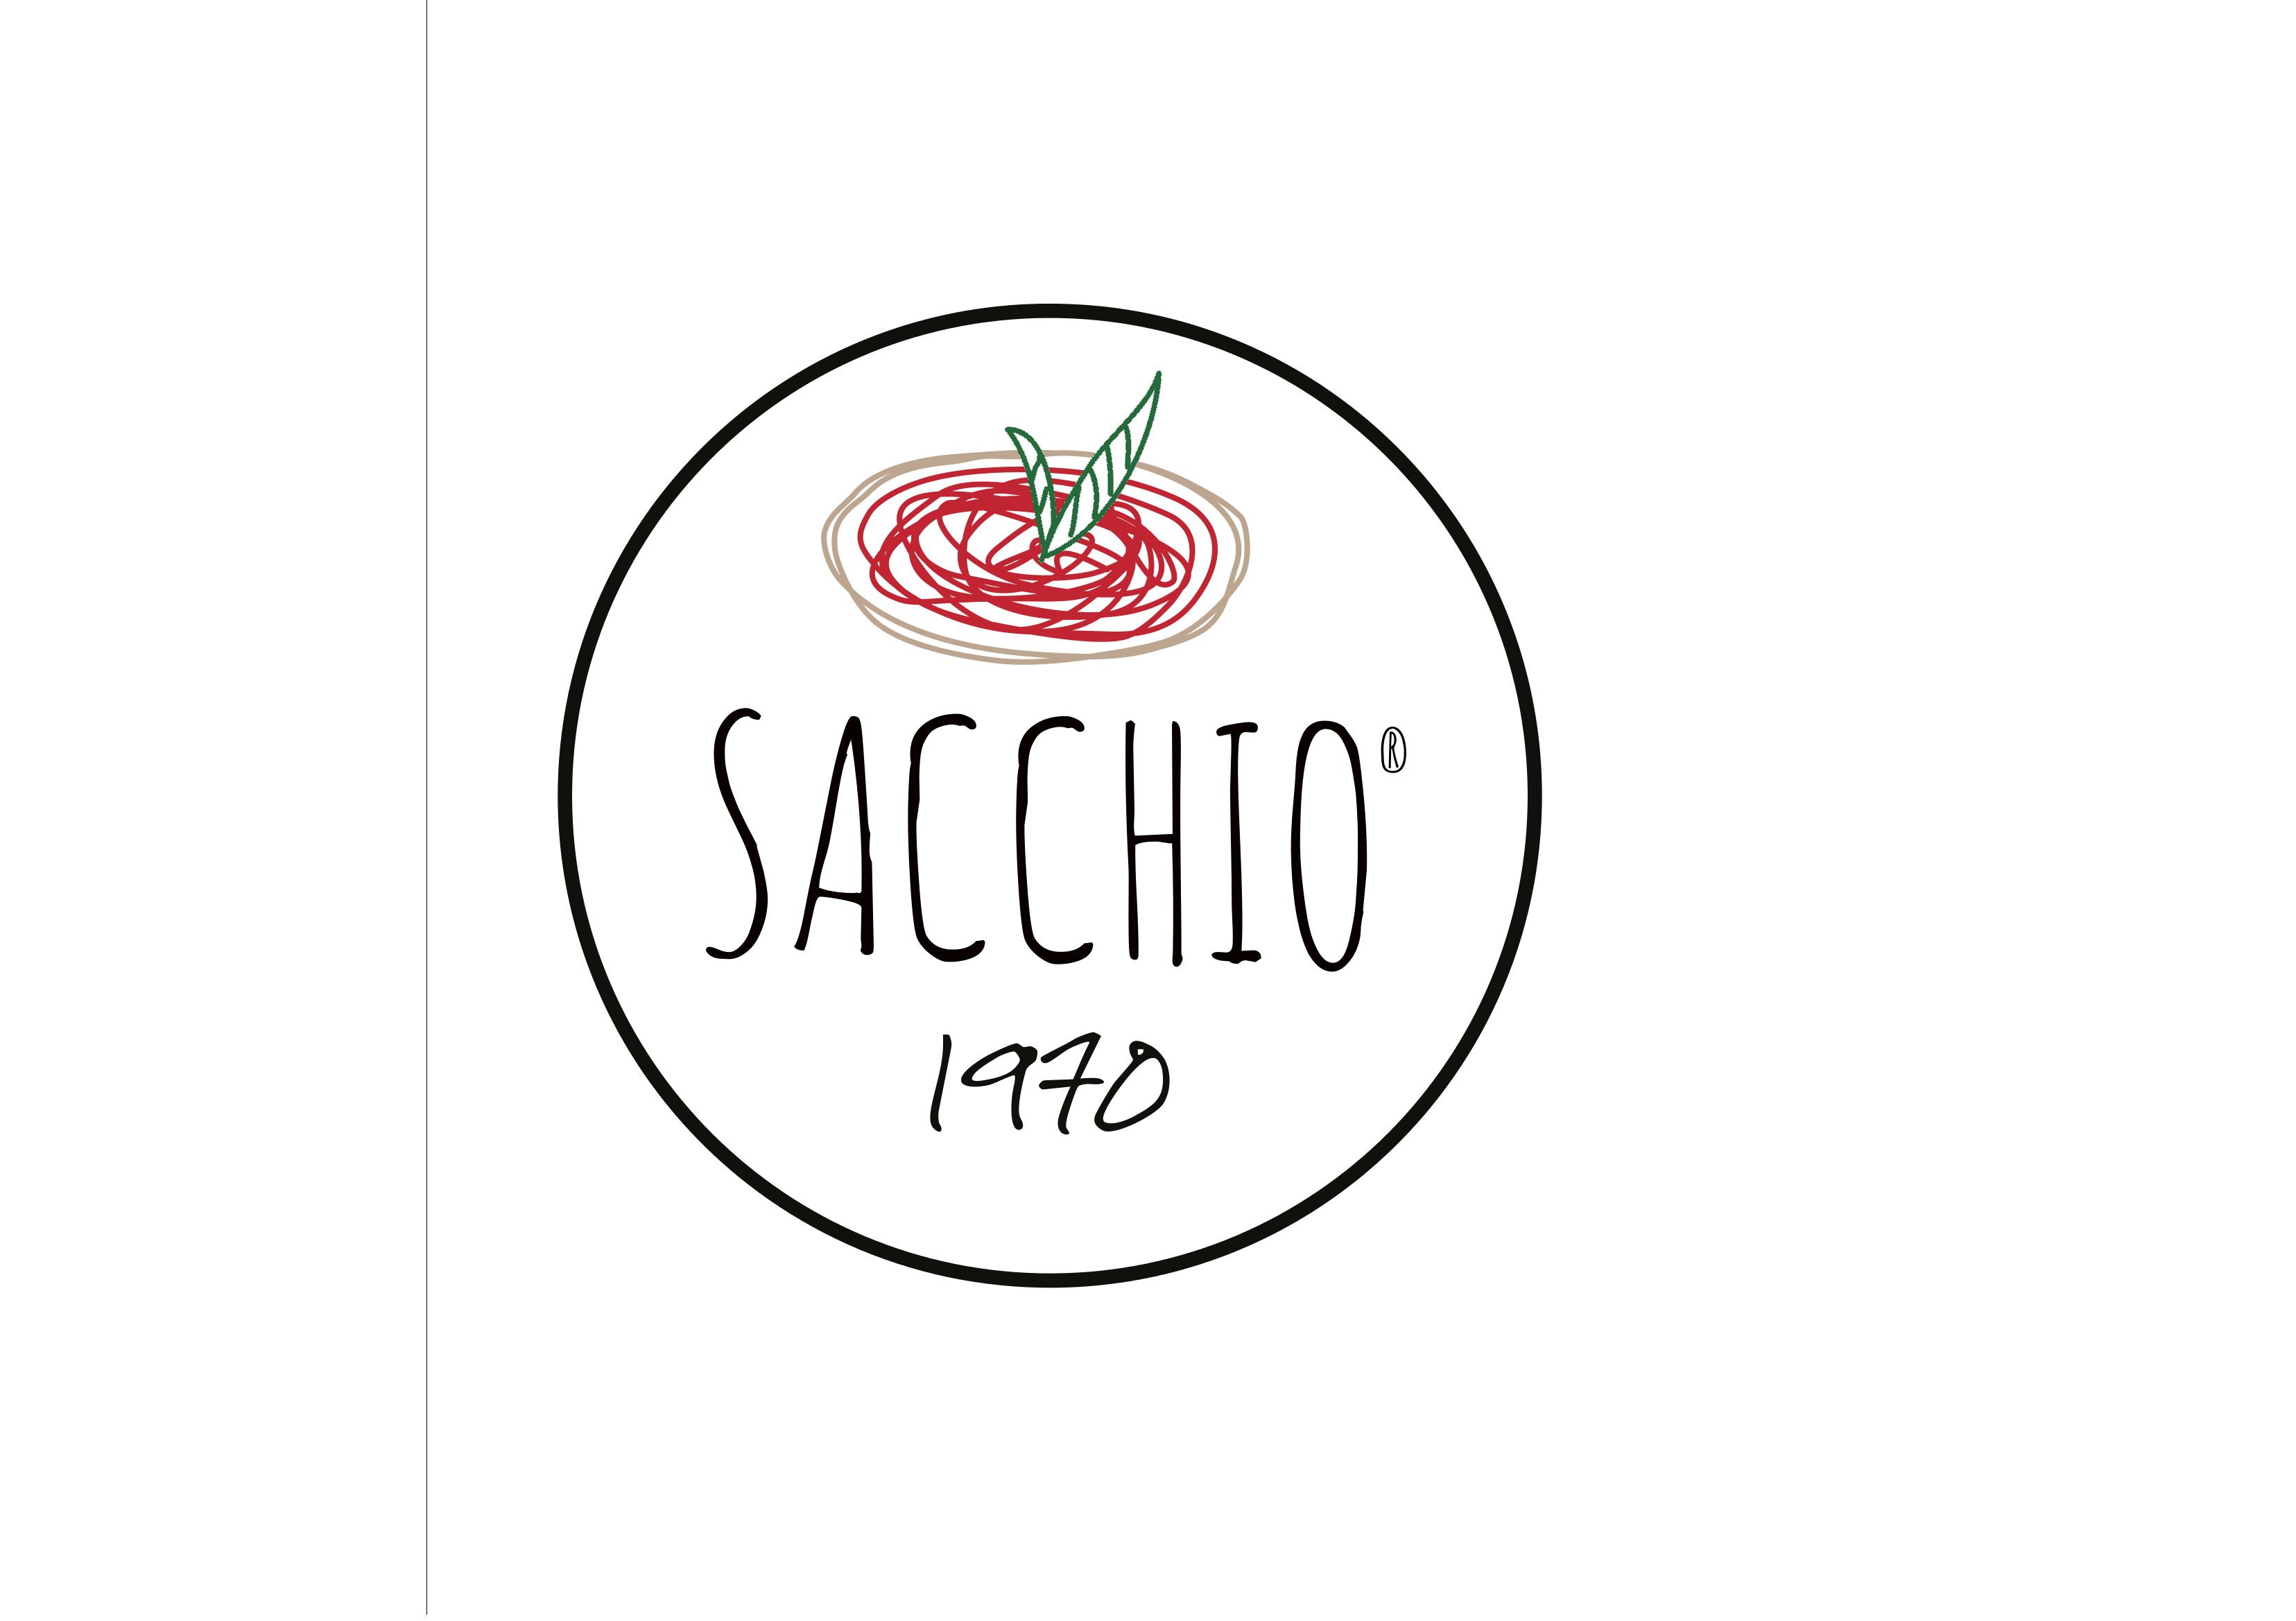 Sacchio 1970